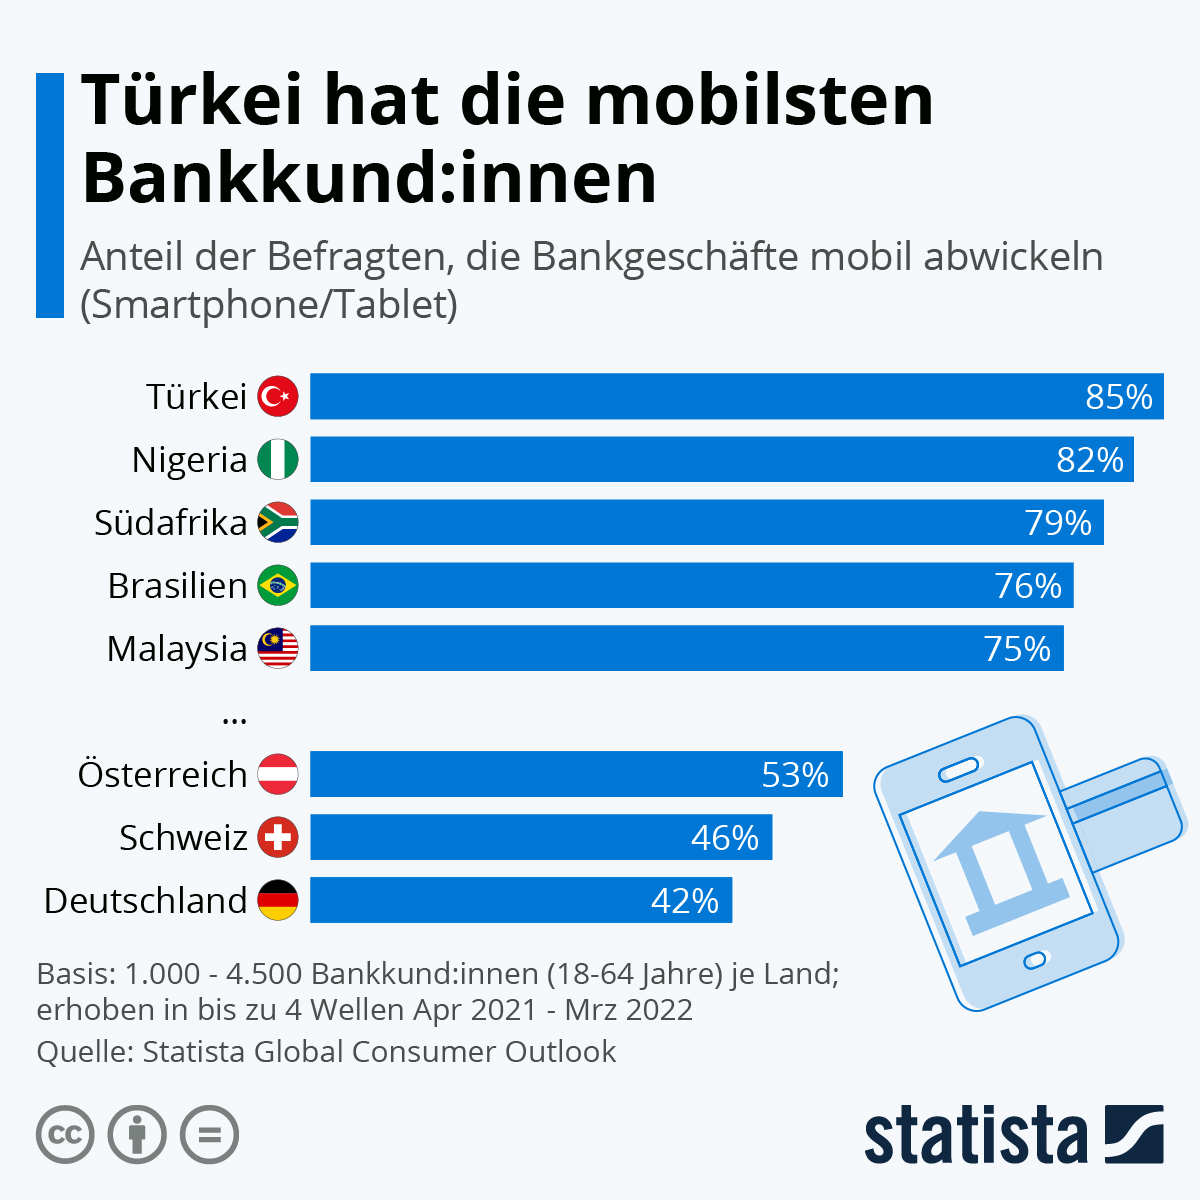 85 Prozent der für den Statista Global Consumer Survey befragten Türk:innen nutzen Smartphones oder Tablets, um ihre Bankgeschäfte abzuwickeln. Klassisches Online-Banking ist dagegen deutlich weniger verbreitet. Das mag daran liegen, dass die mobile Infrastruktur besser ist als das stationäre Internet. 